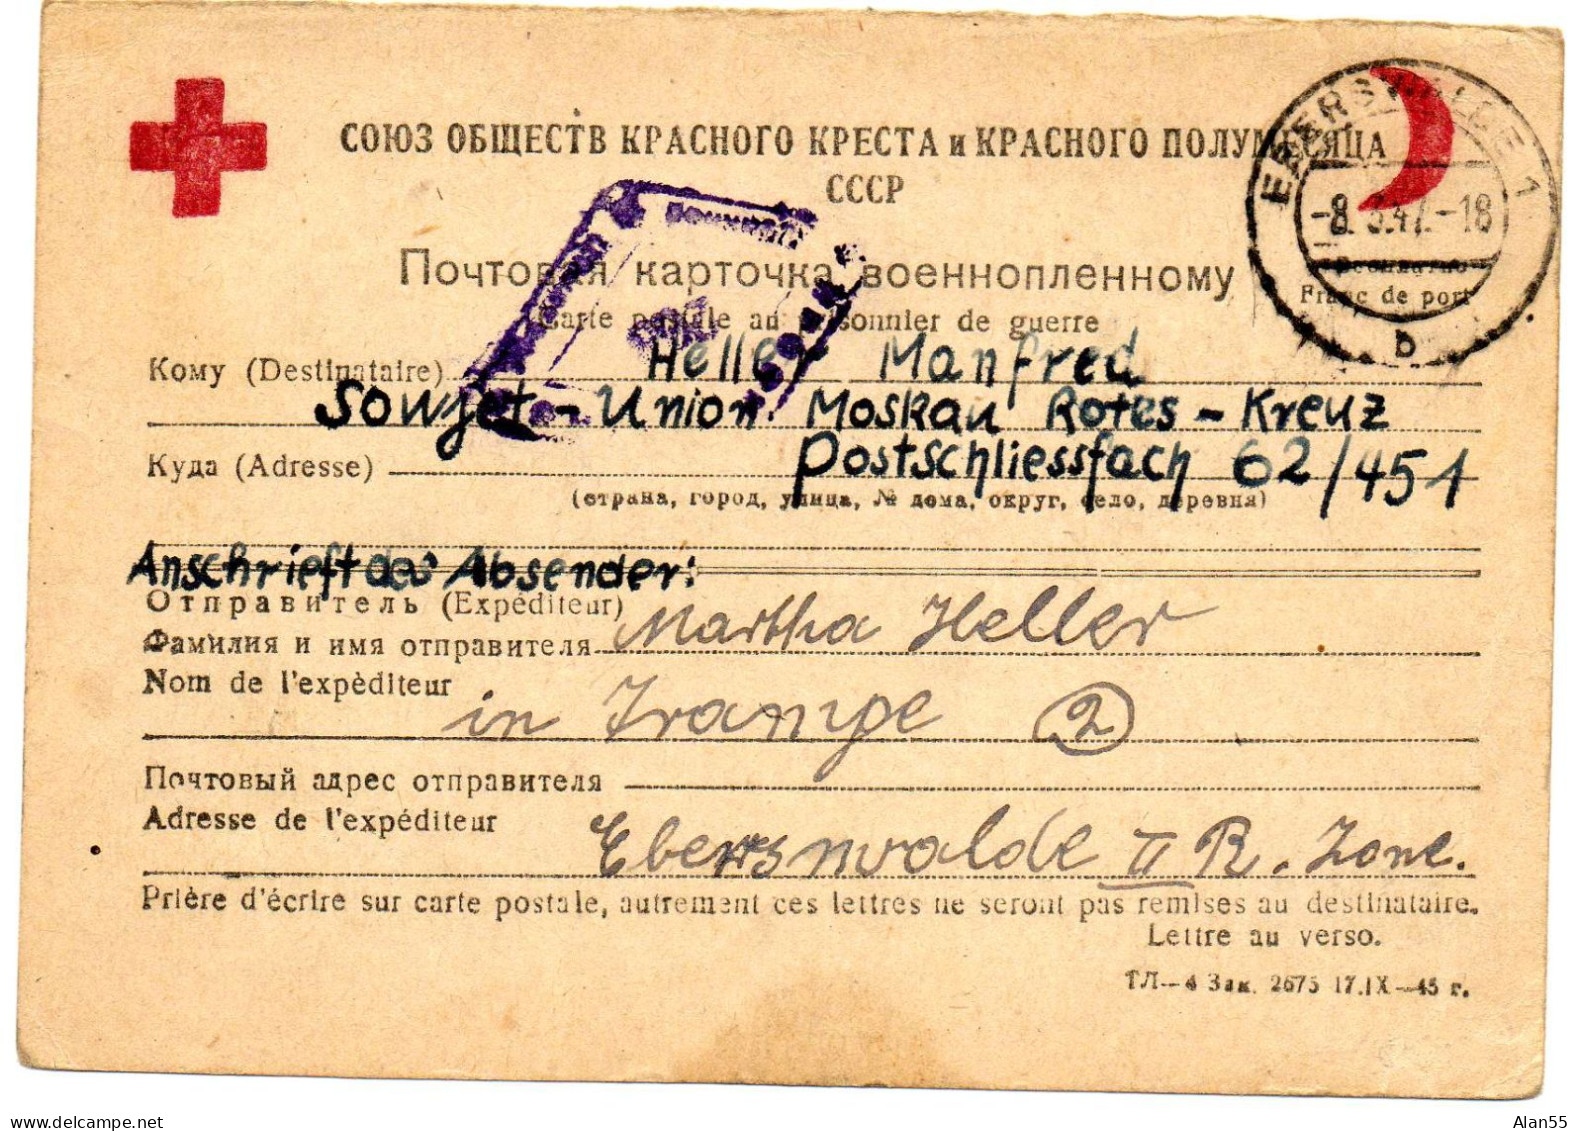 URSS. 1947. CARTE FAMILIALE CROIX-ROUGE. (SENS ALLEMAGNE-URSS). CENSURE - Briefe U. Dokumente